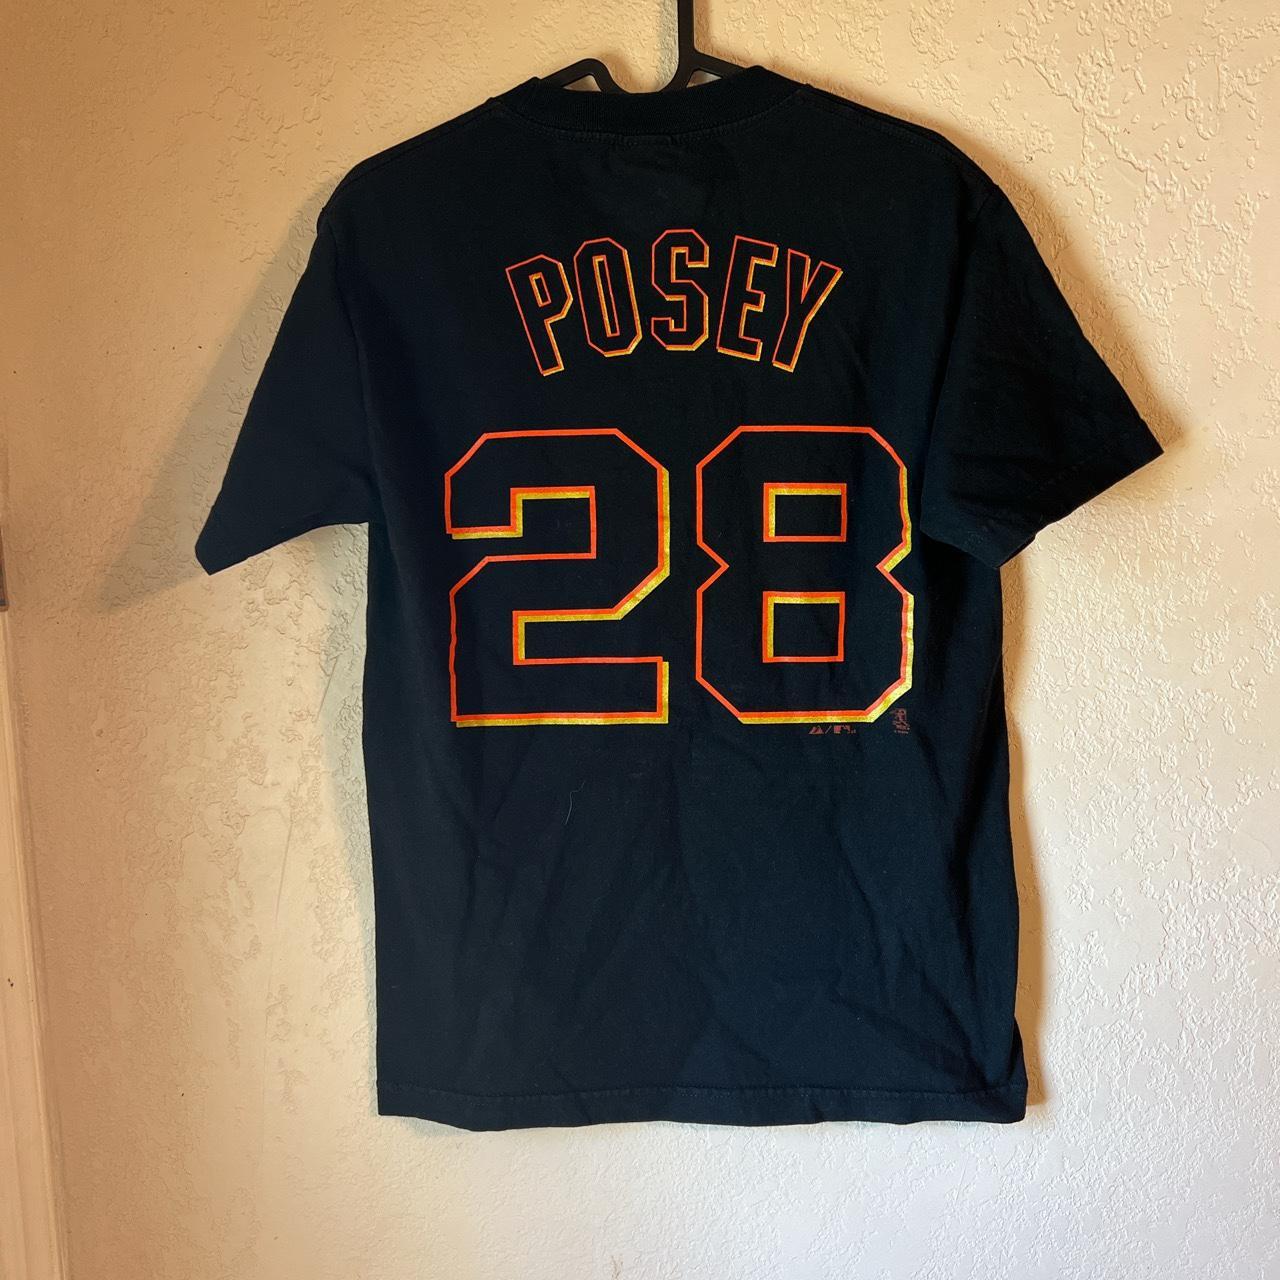 Buster Posey Jersey shirt #giants #baskeball - Depop